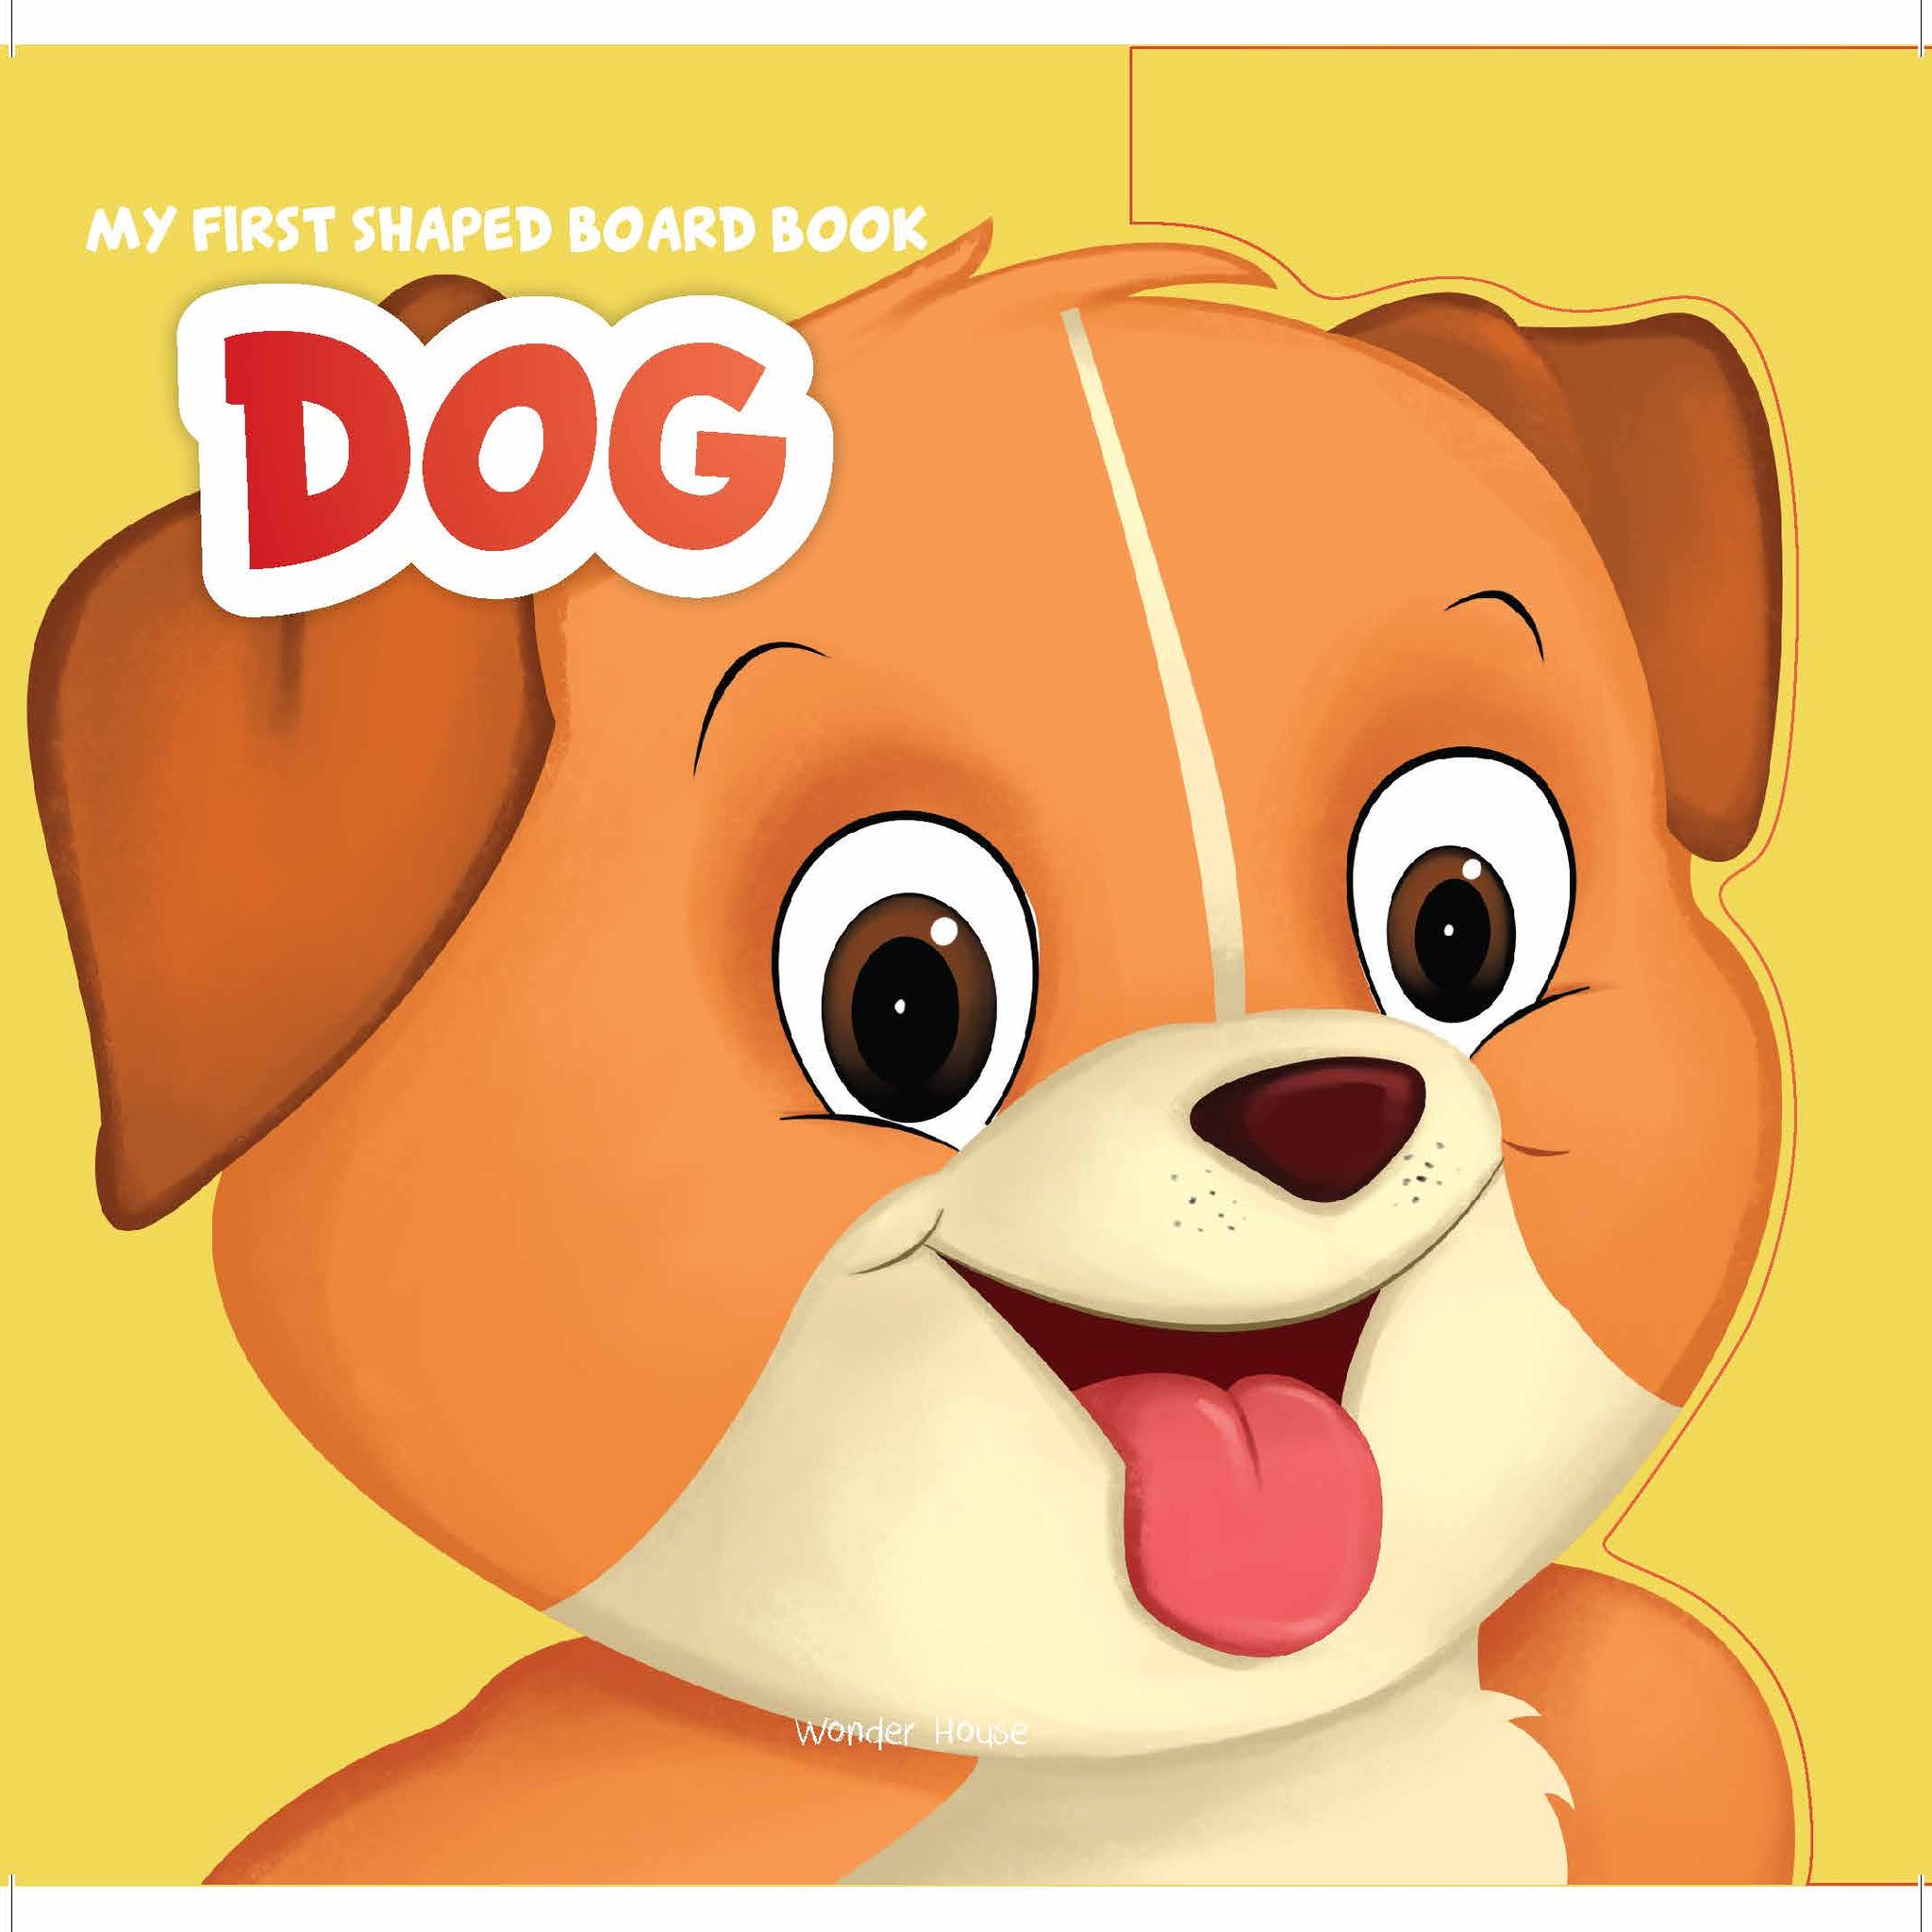 MyFirstShapedBoardBook- Dog, Die-Cut Animals, Picture Book for Children